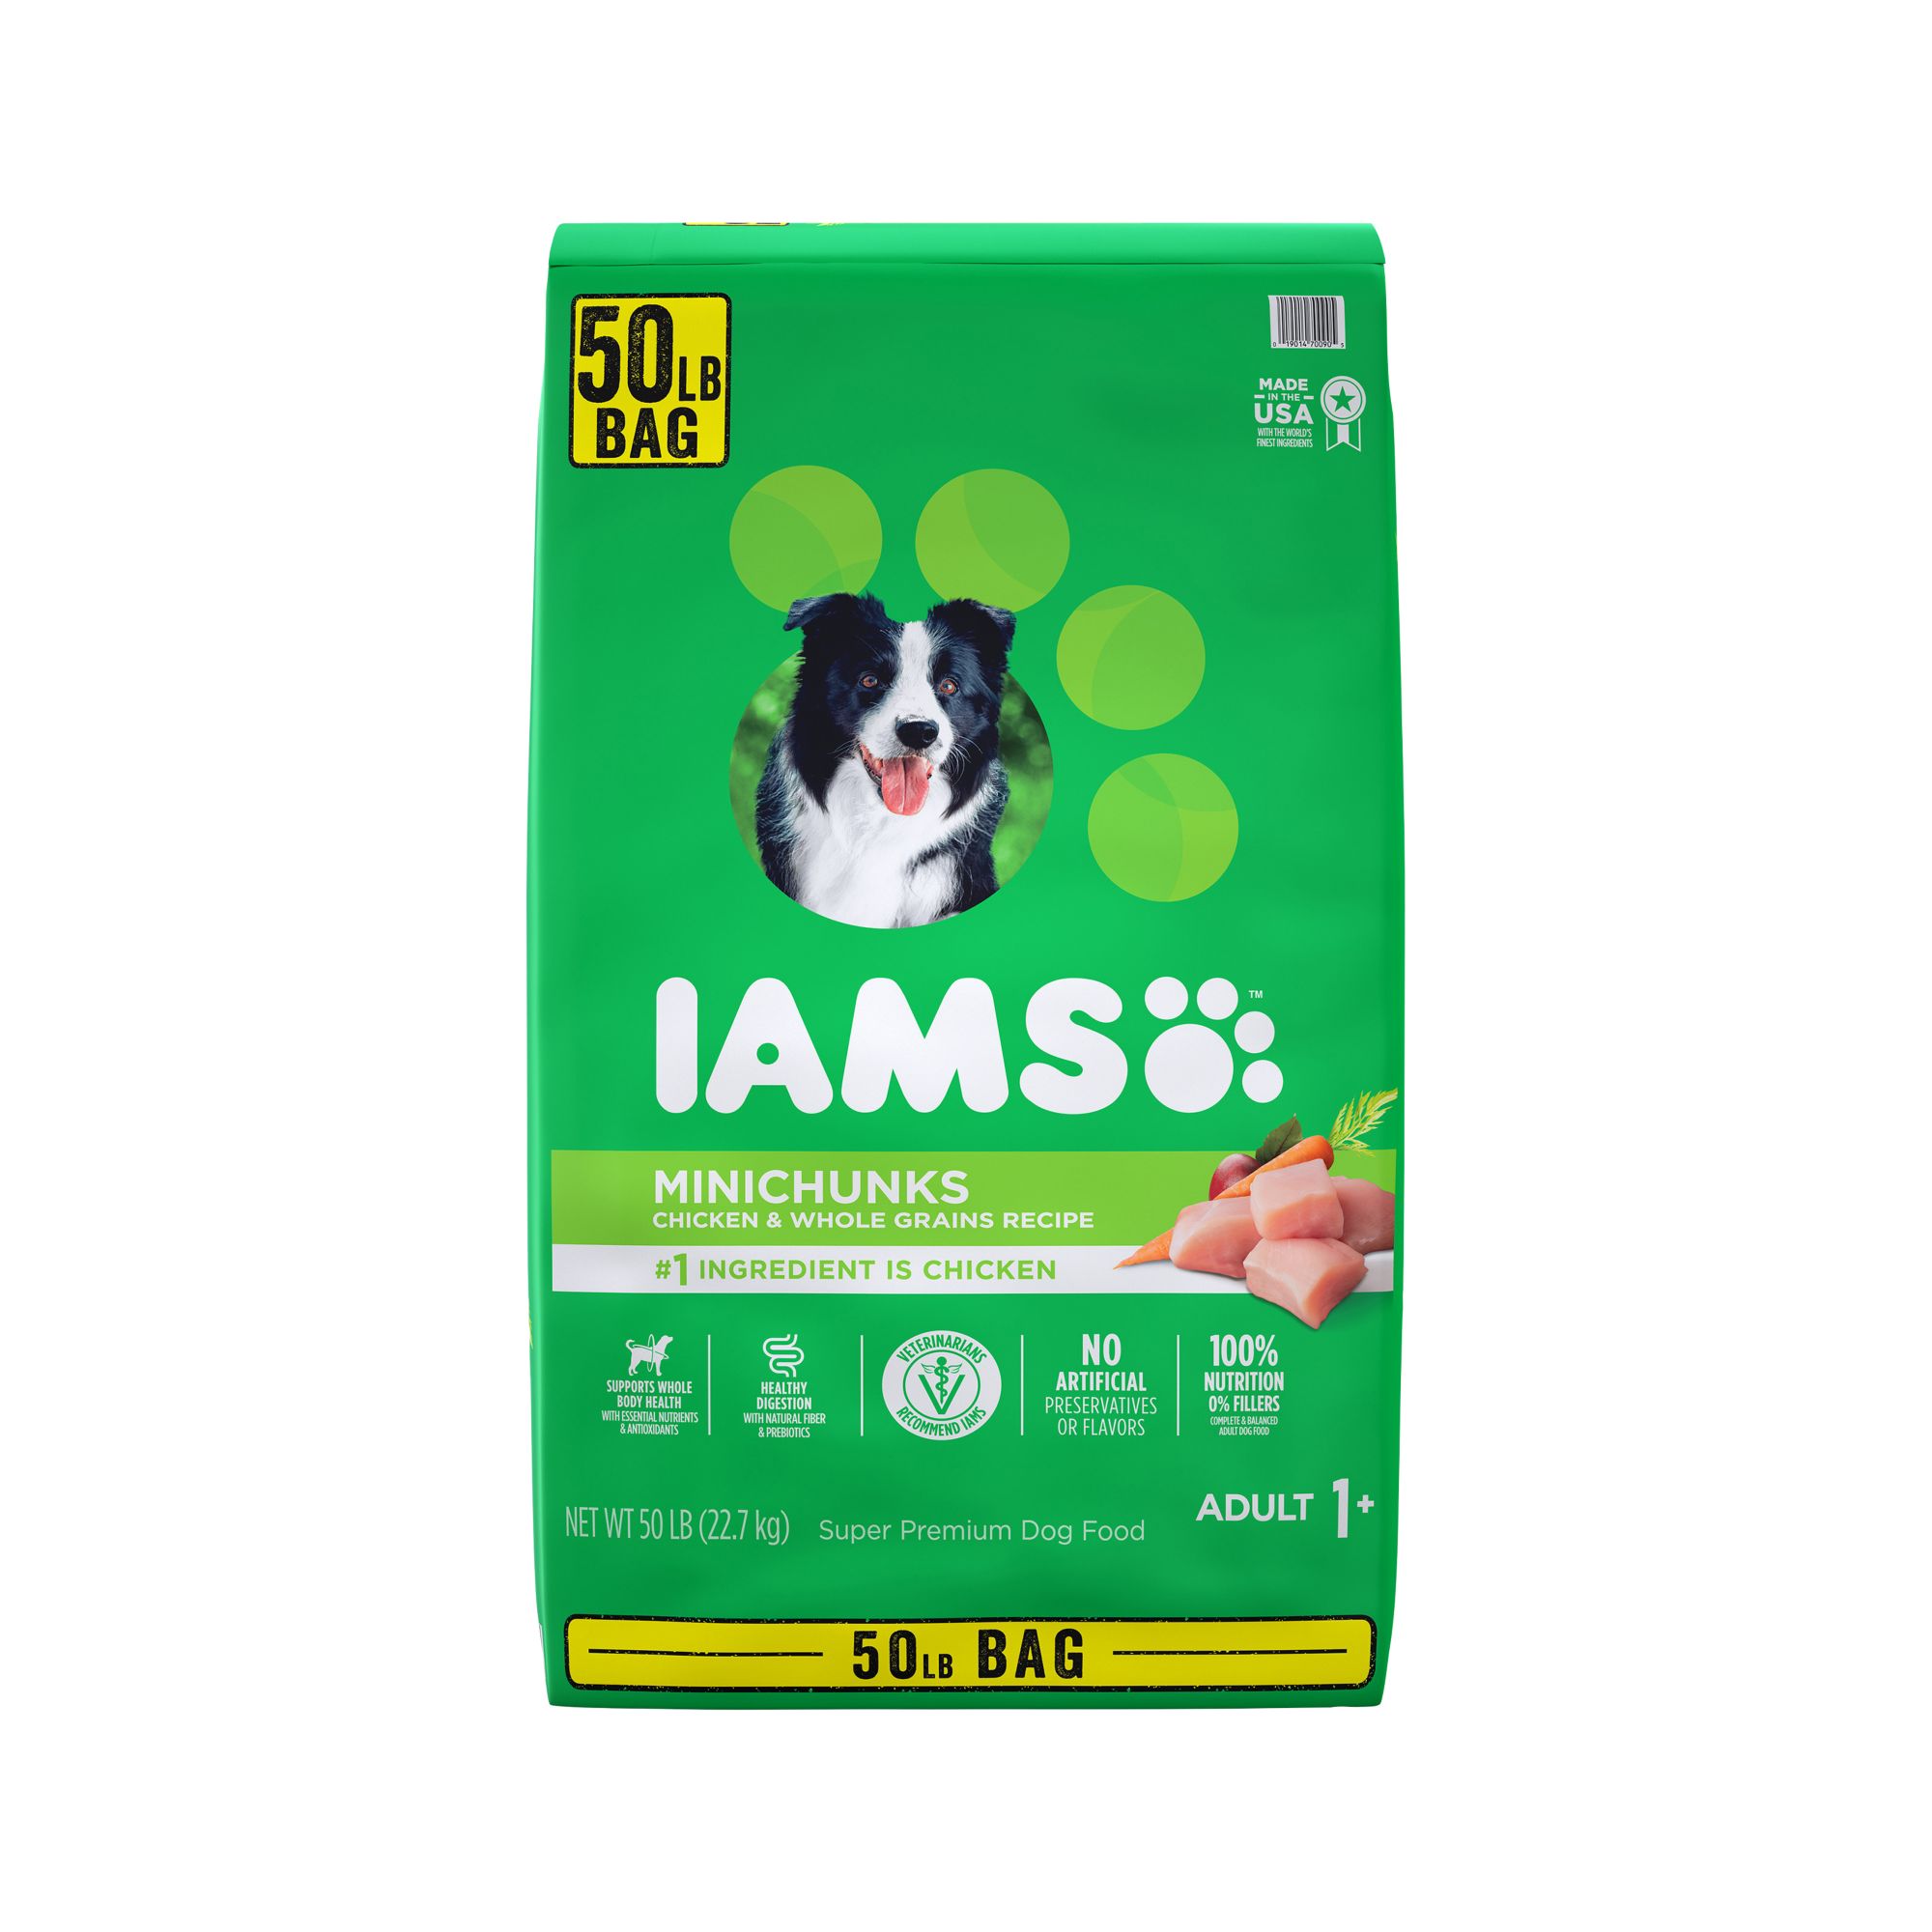 dog food similar to iams